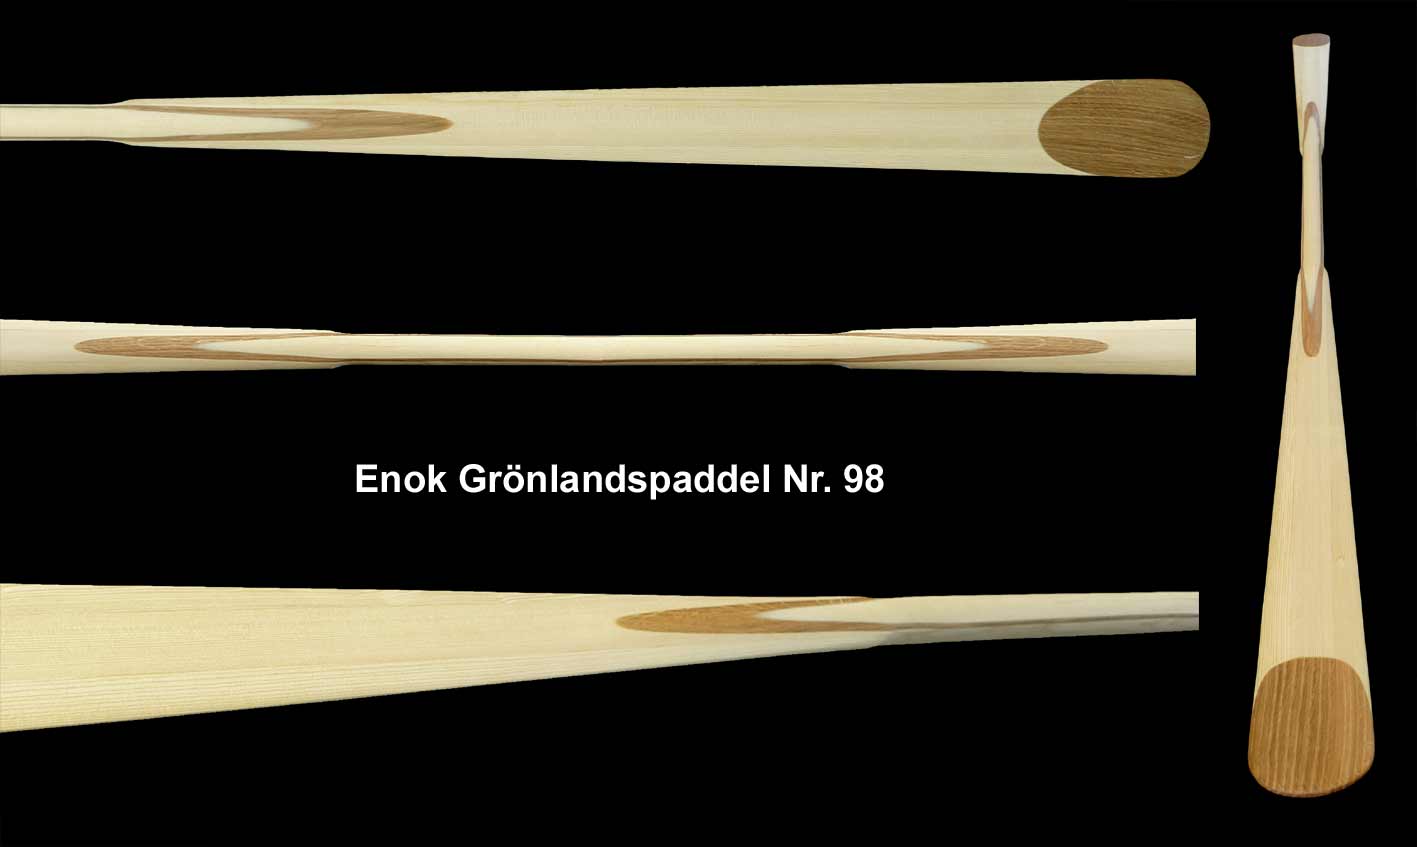 Enok Grönlandspaddel Nr 98 Mönstrad med Ekinläggning i skaftet